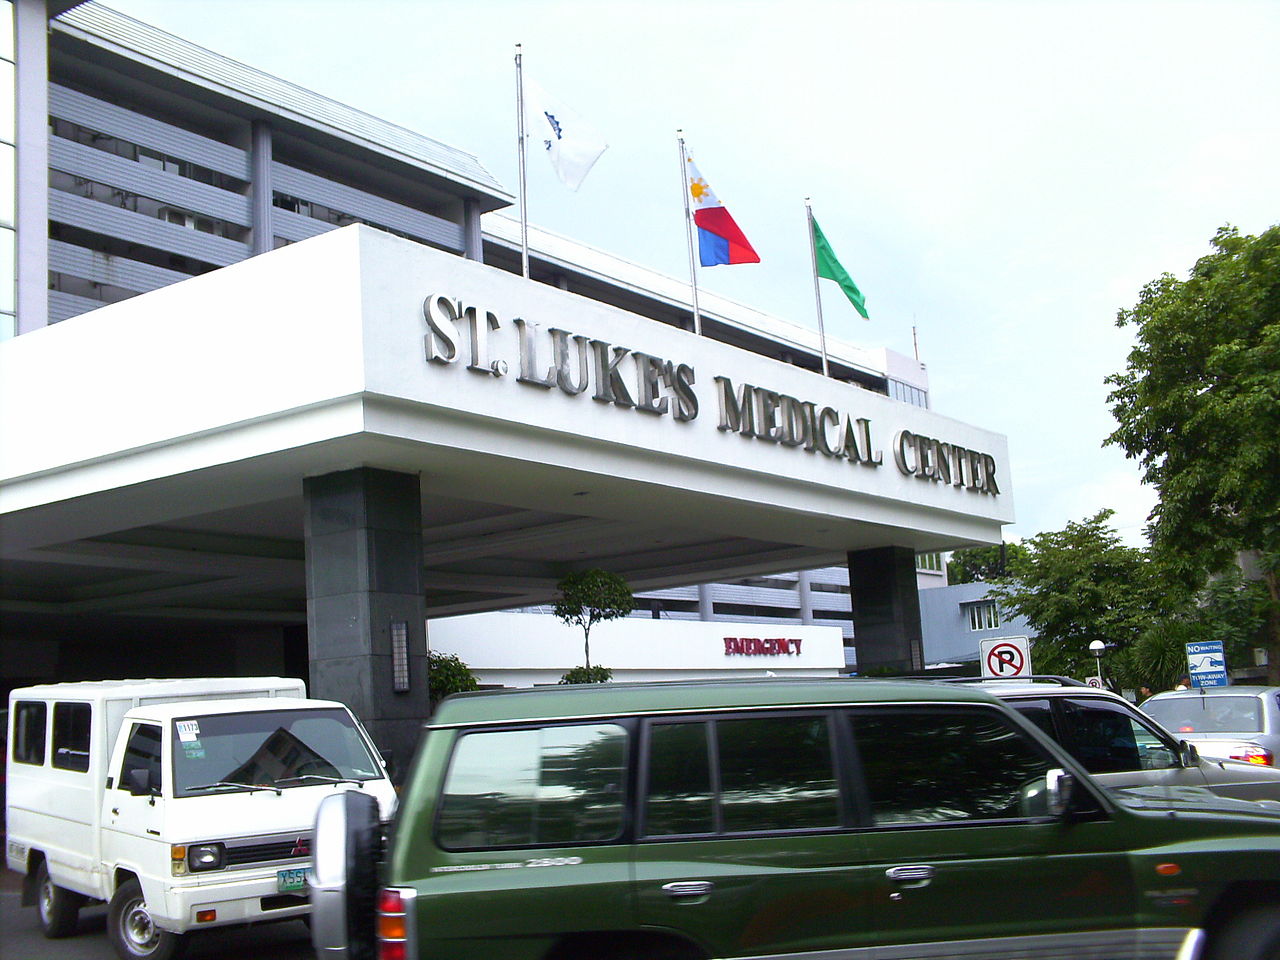 St. Luke’s Medical Center – Quezon City